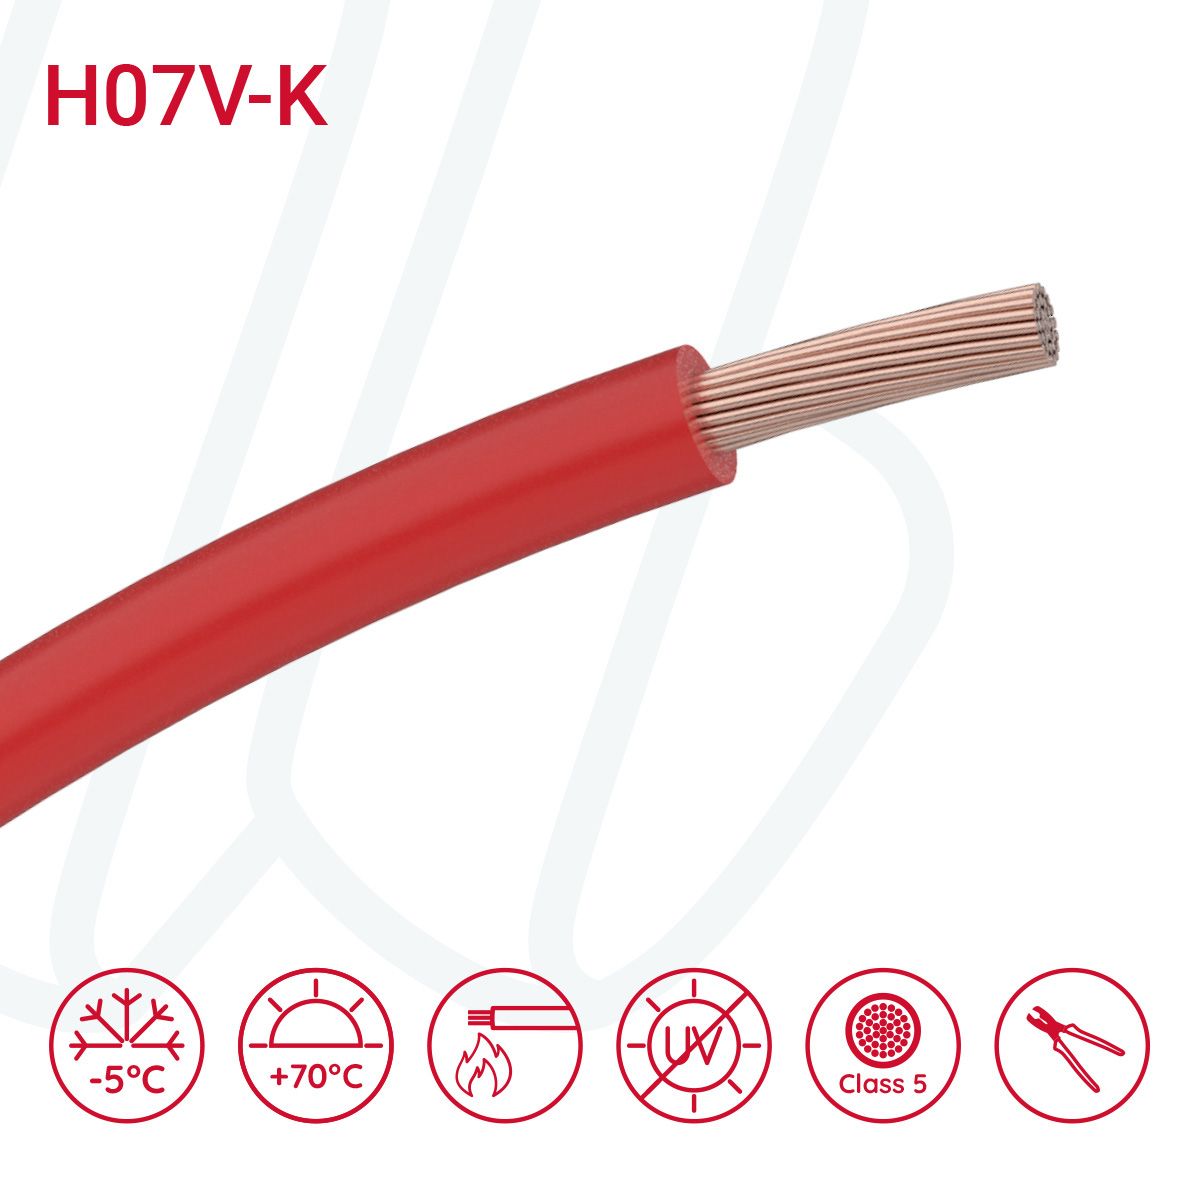 Провід монтажний гнучкий H07V-K 25 мм² червоний, 01, 25